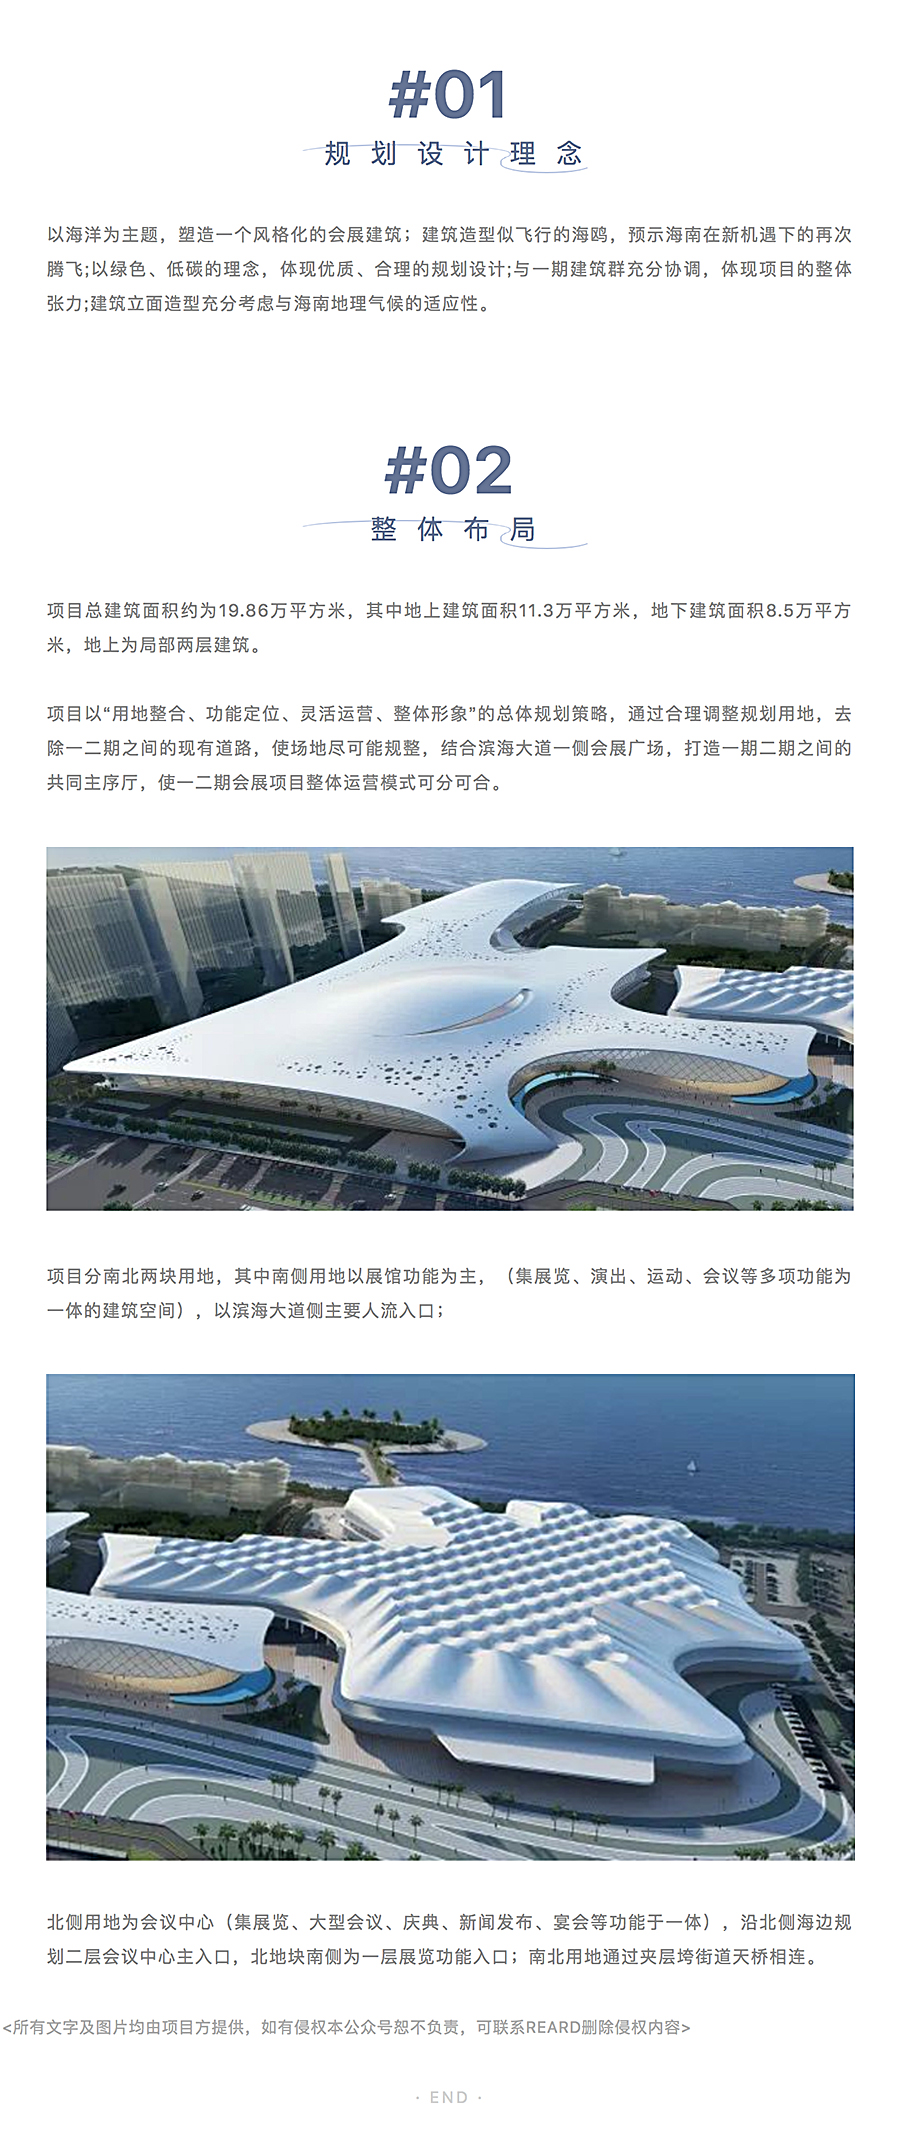 海南国际会展中心二期扩建项目_0001_图层-2.jpg